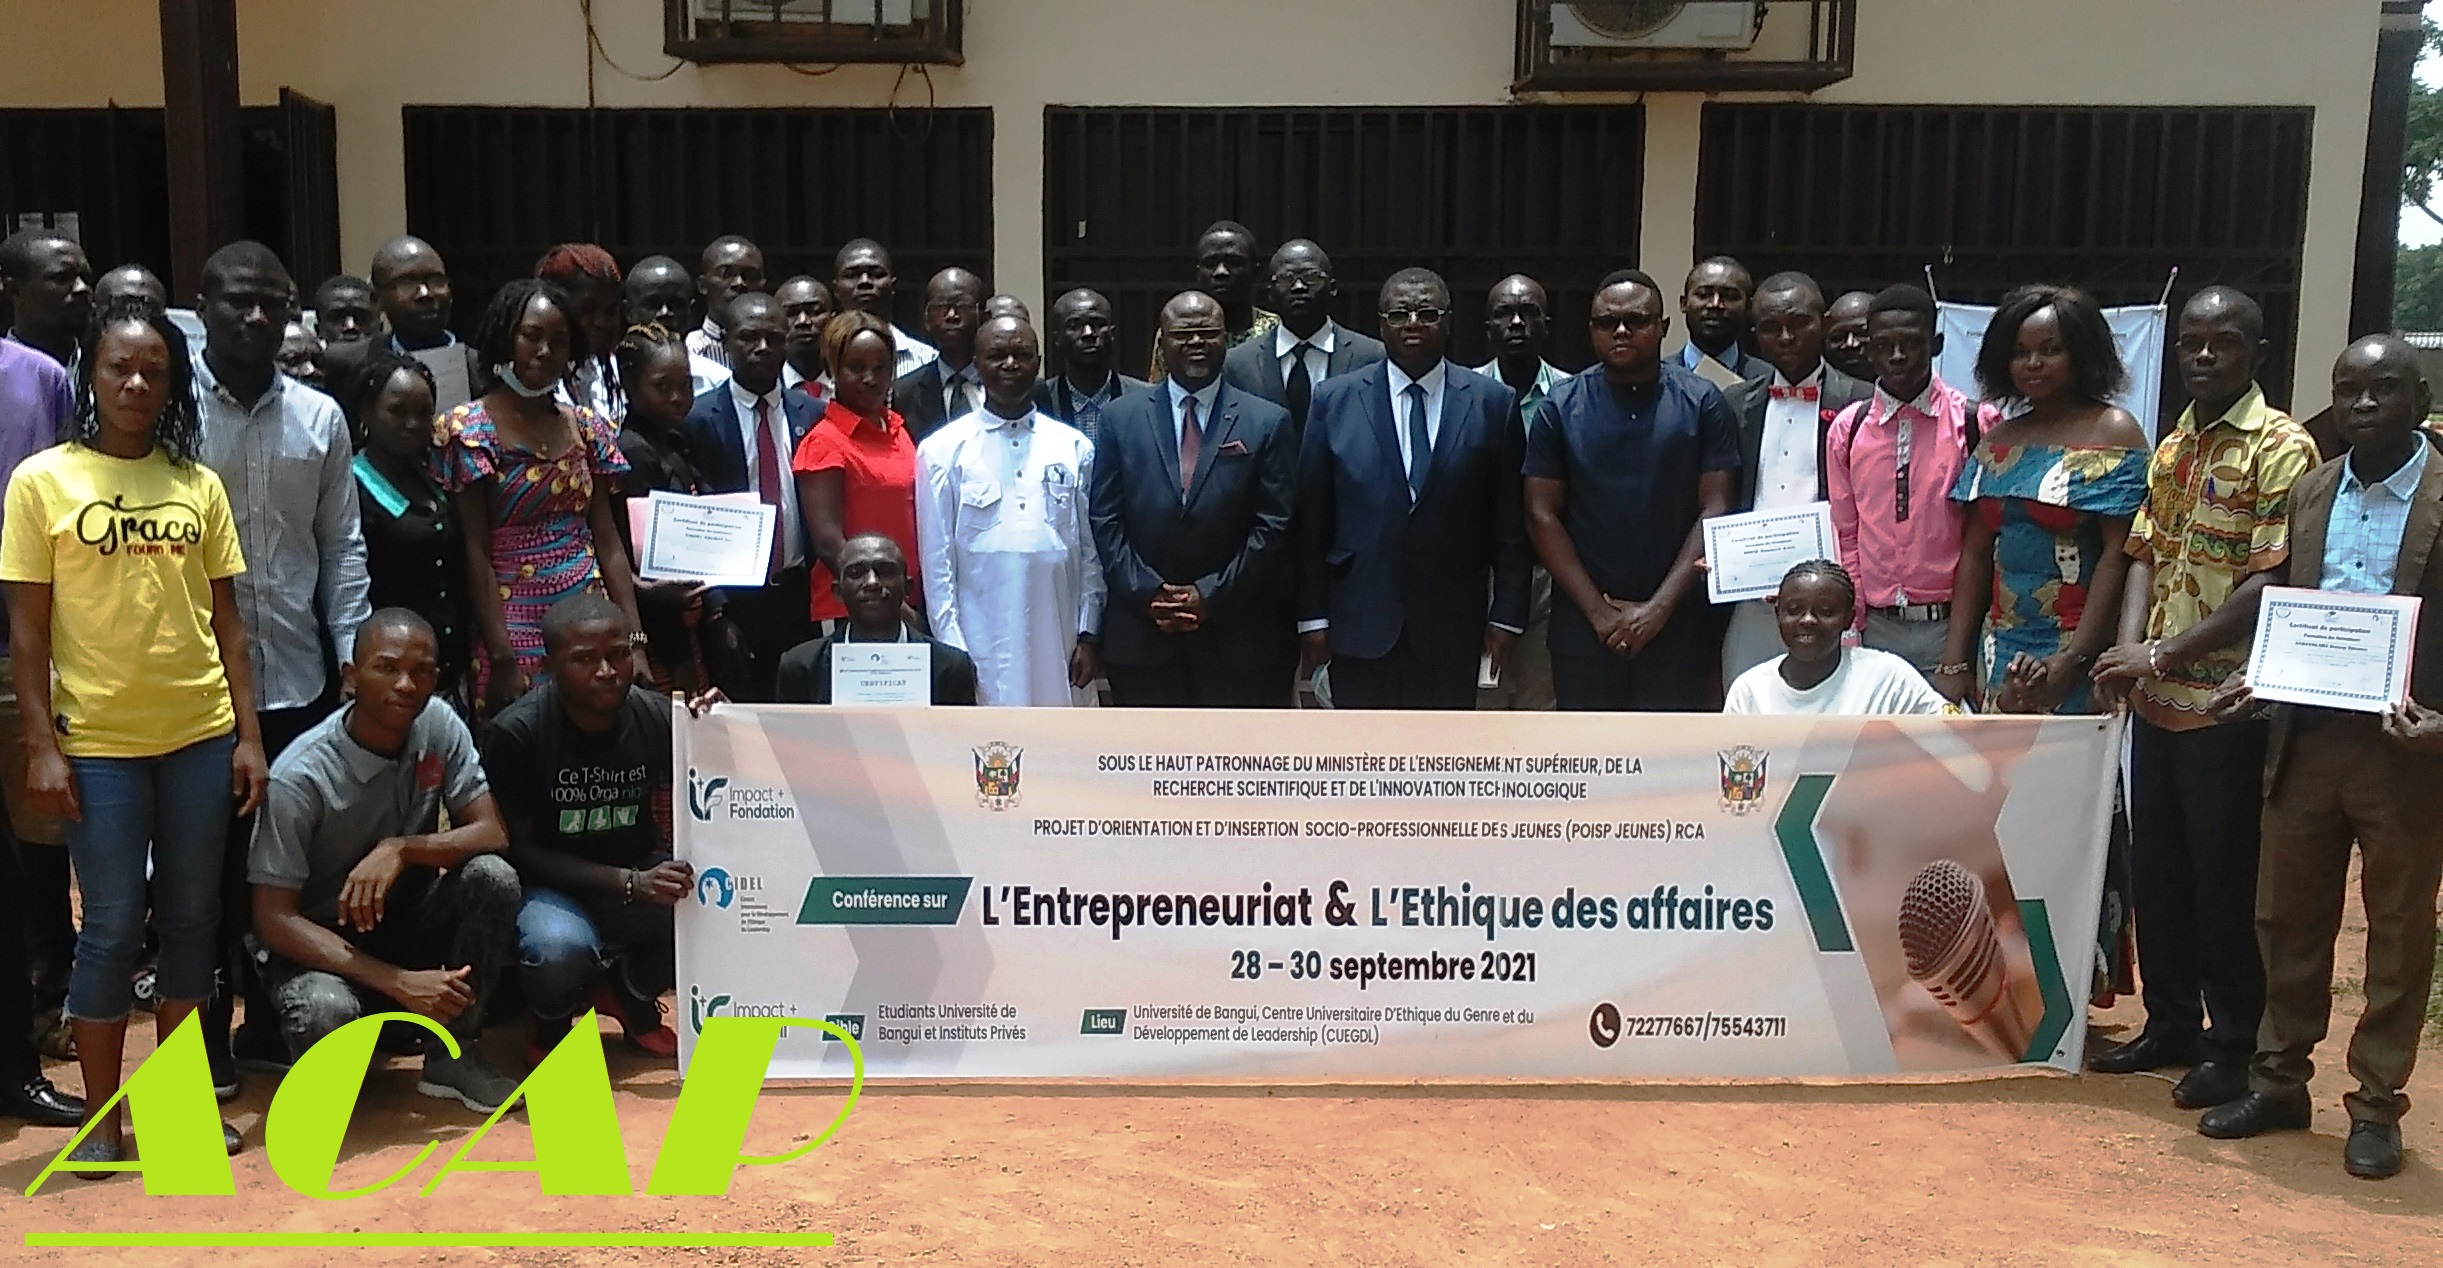 Insérer désormais le programme de l’entreprenariat dans toutes les facultés de l’Université de Bangui